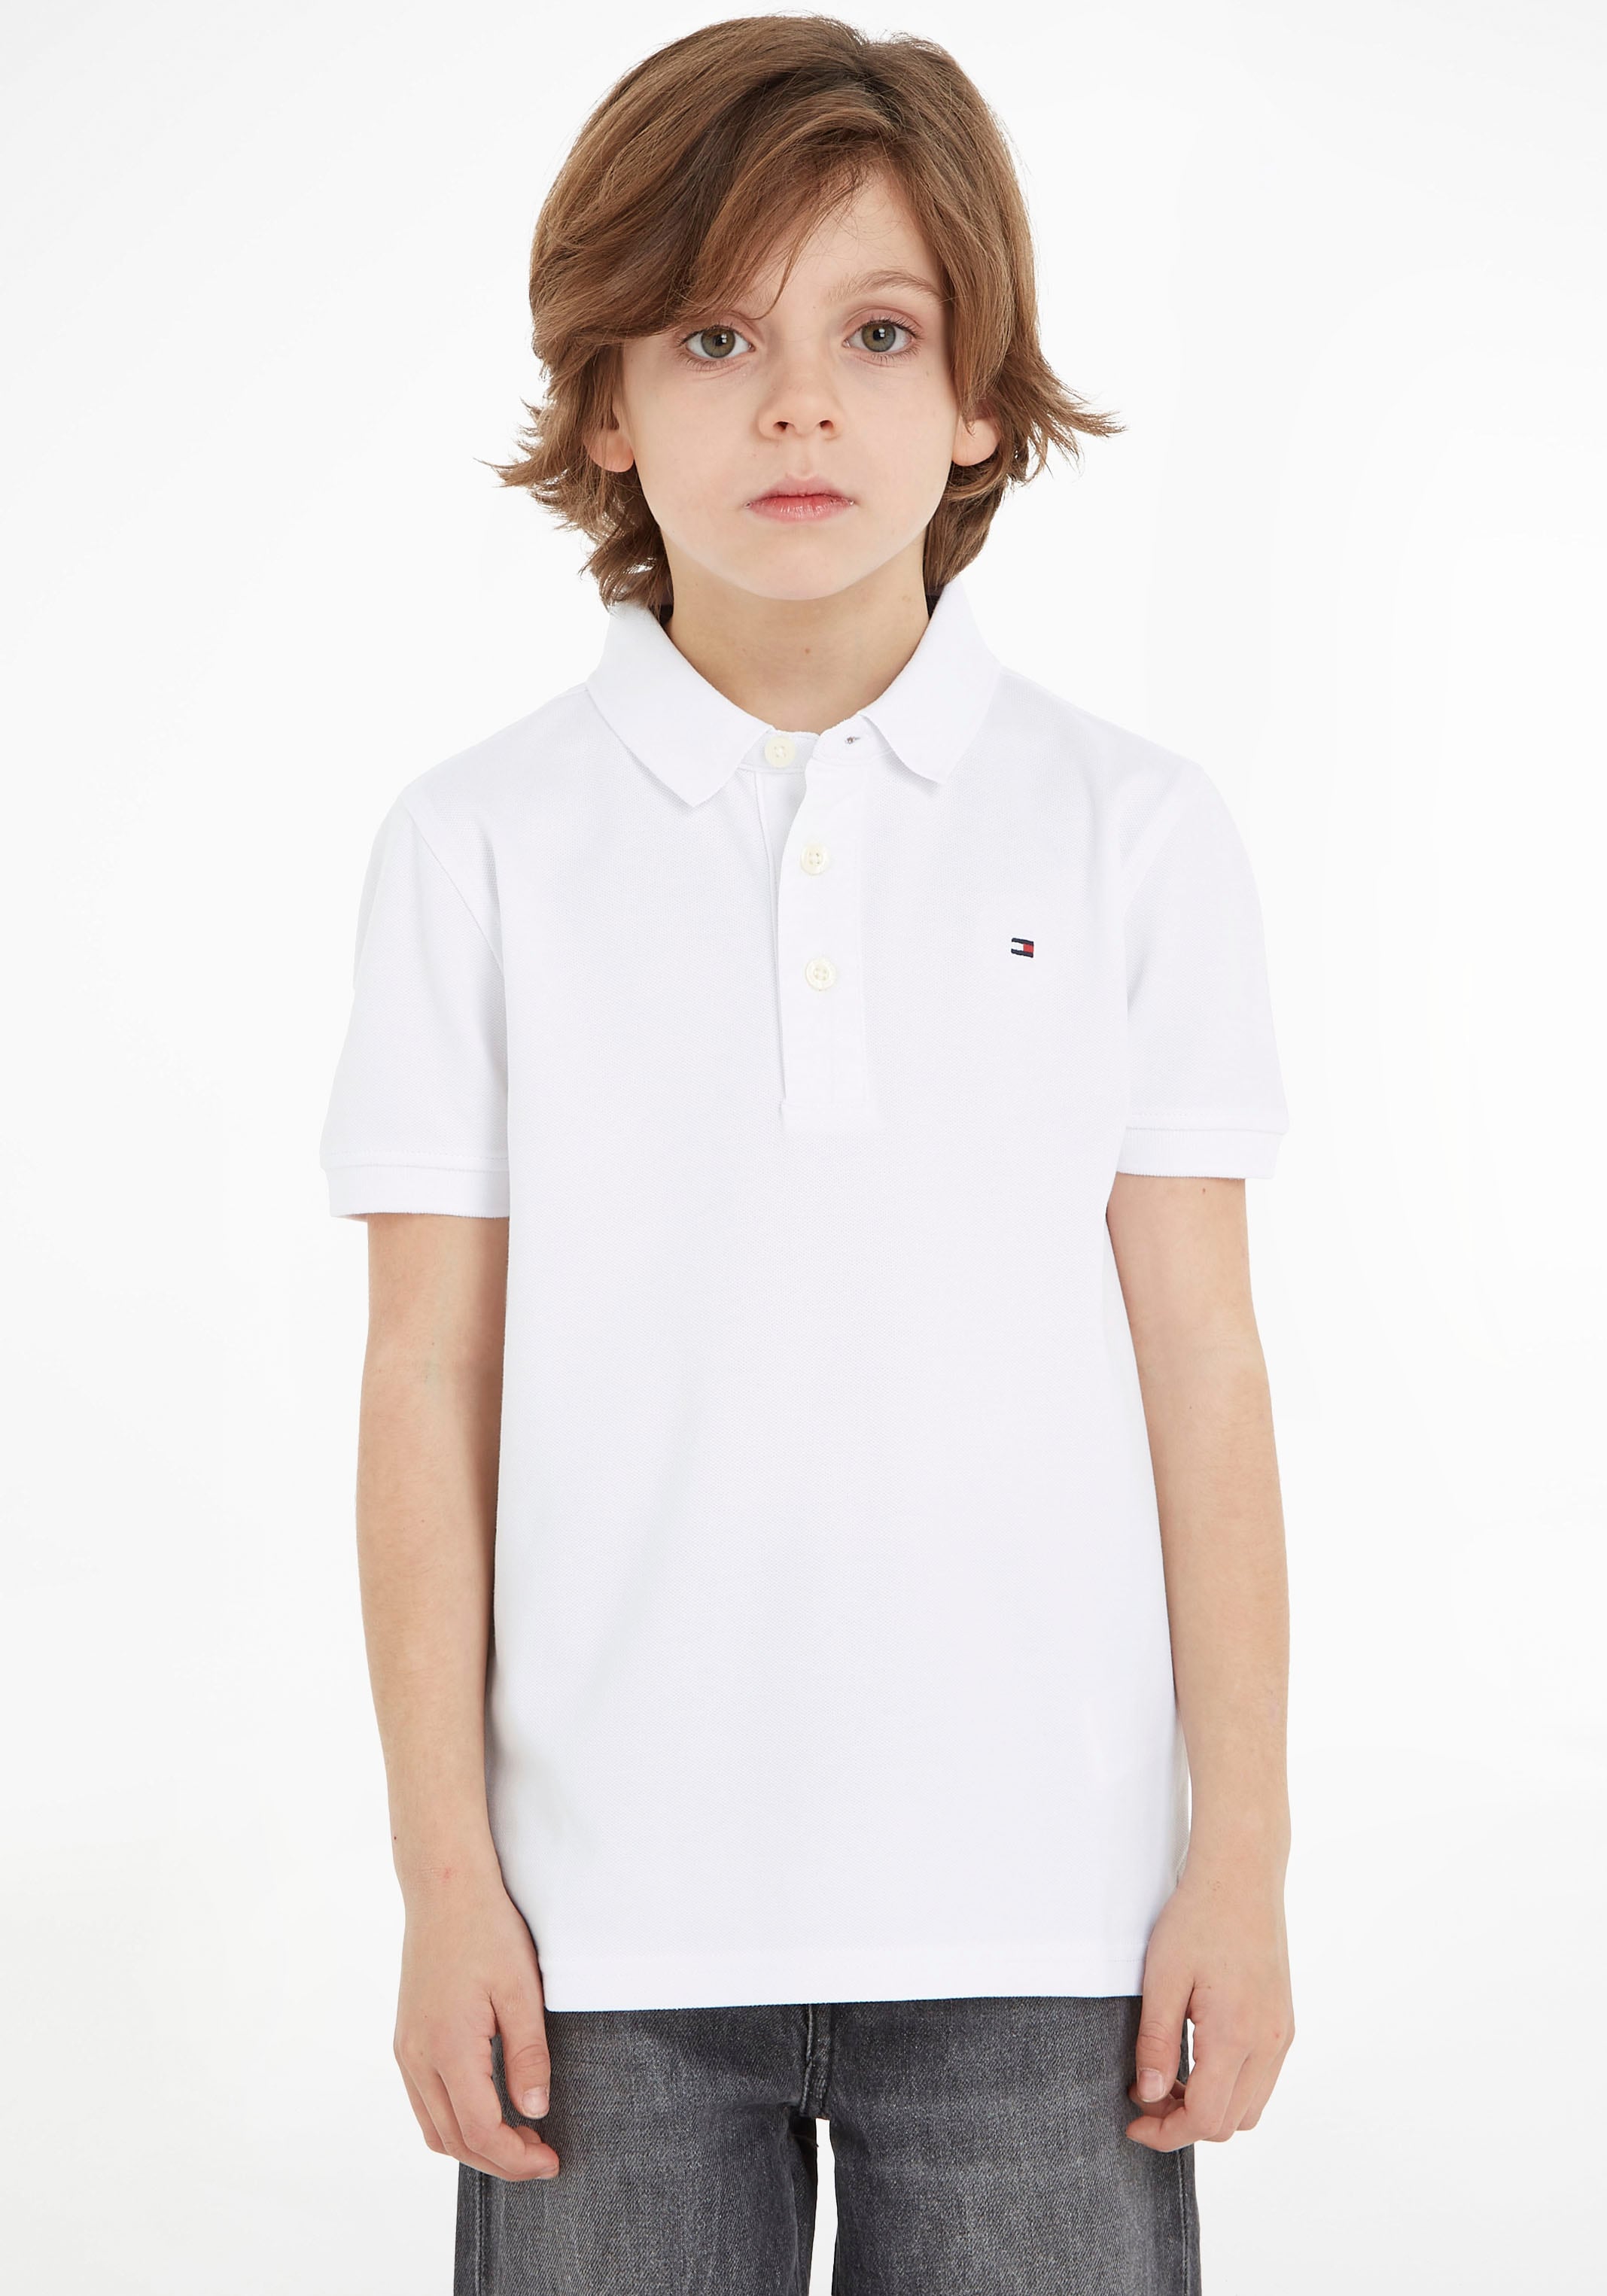 Poloshirt »BOYS TOMMY POLO«, Kinder Kids Junior MiniMe,für Jungen